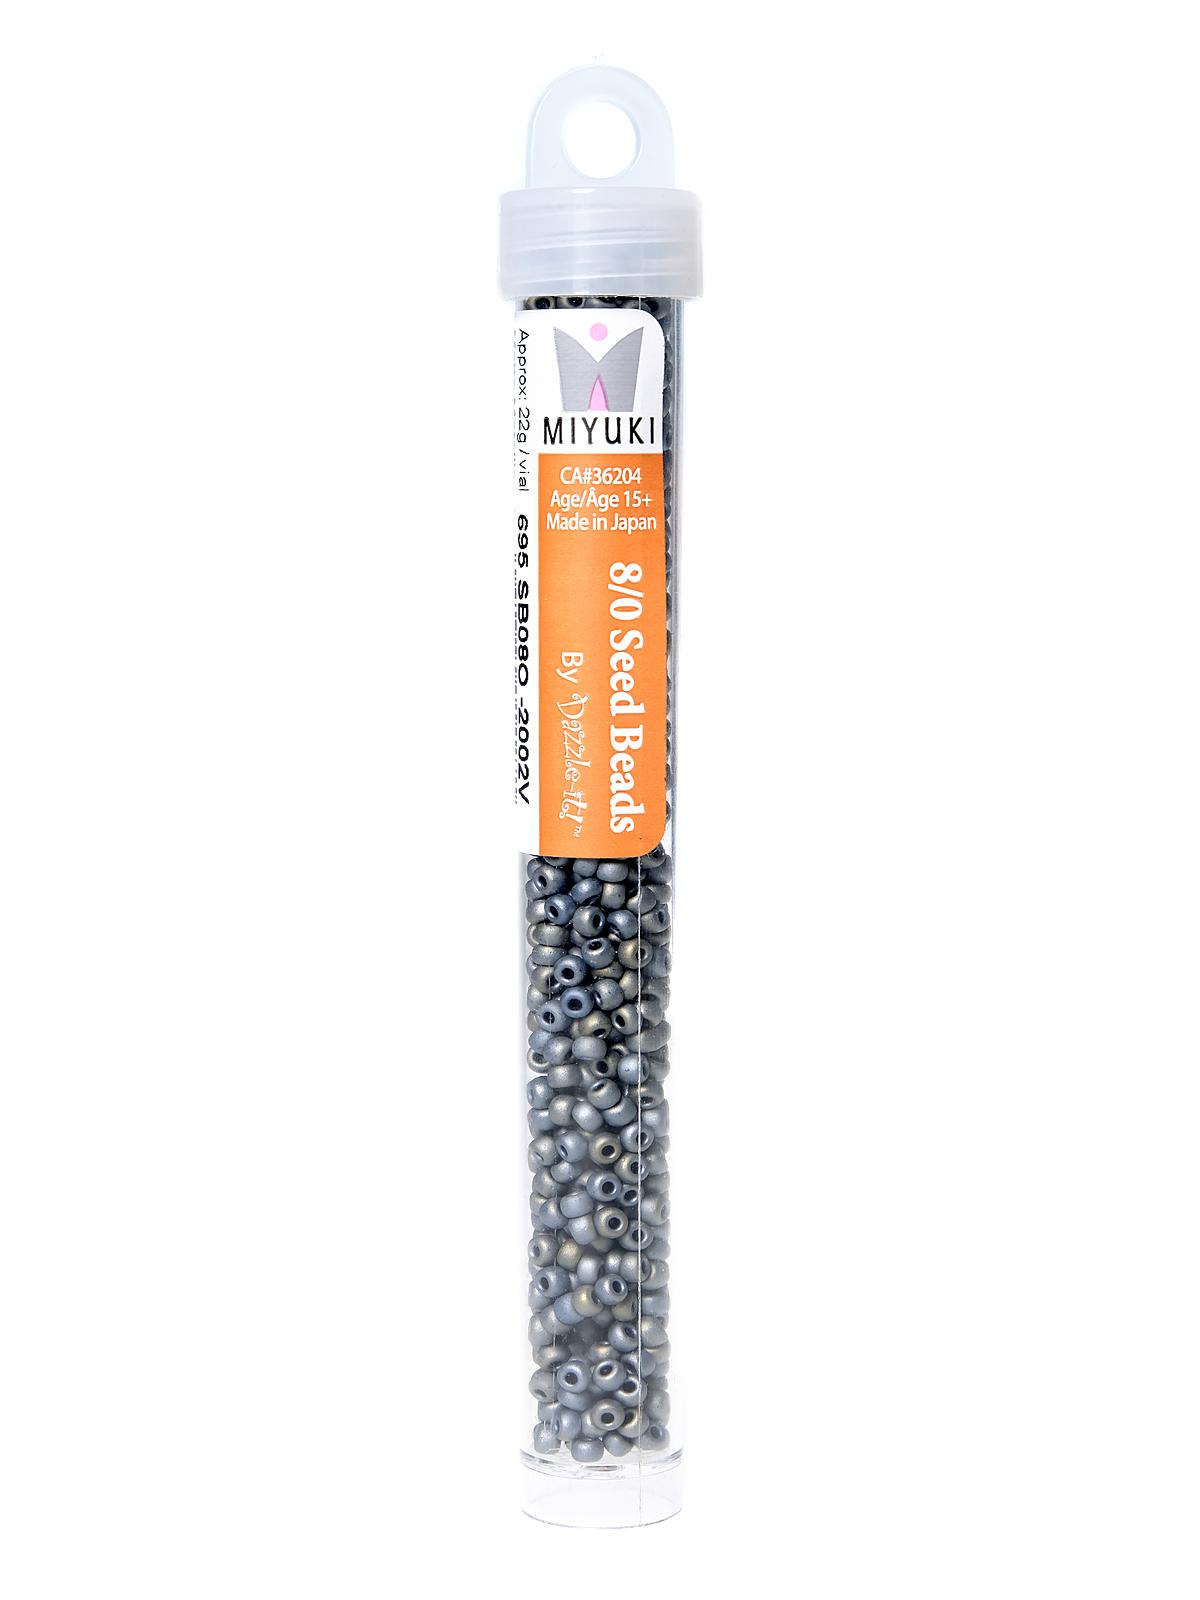 Miyuki Seed Beads 8 0 22g Tube Matte Metallic Silver Grey